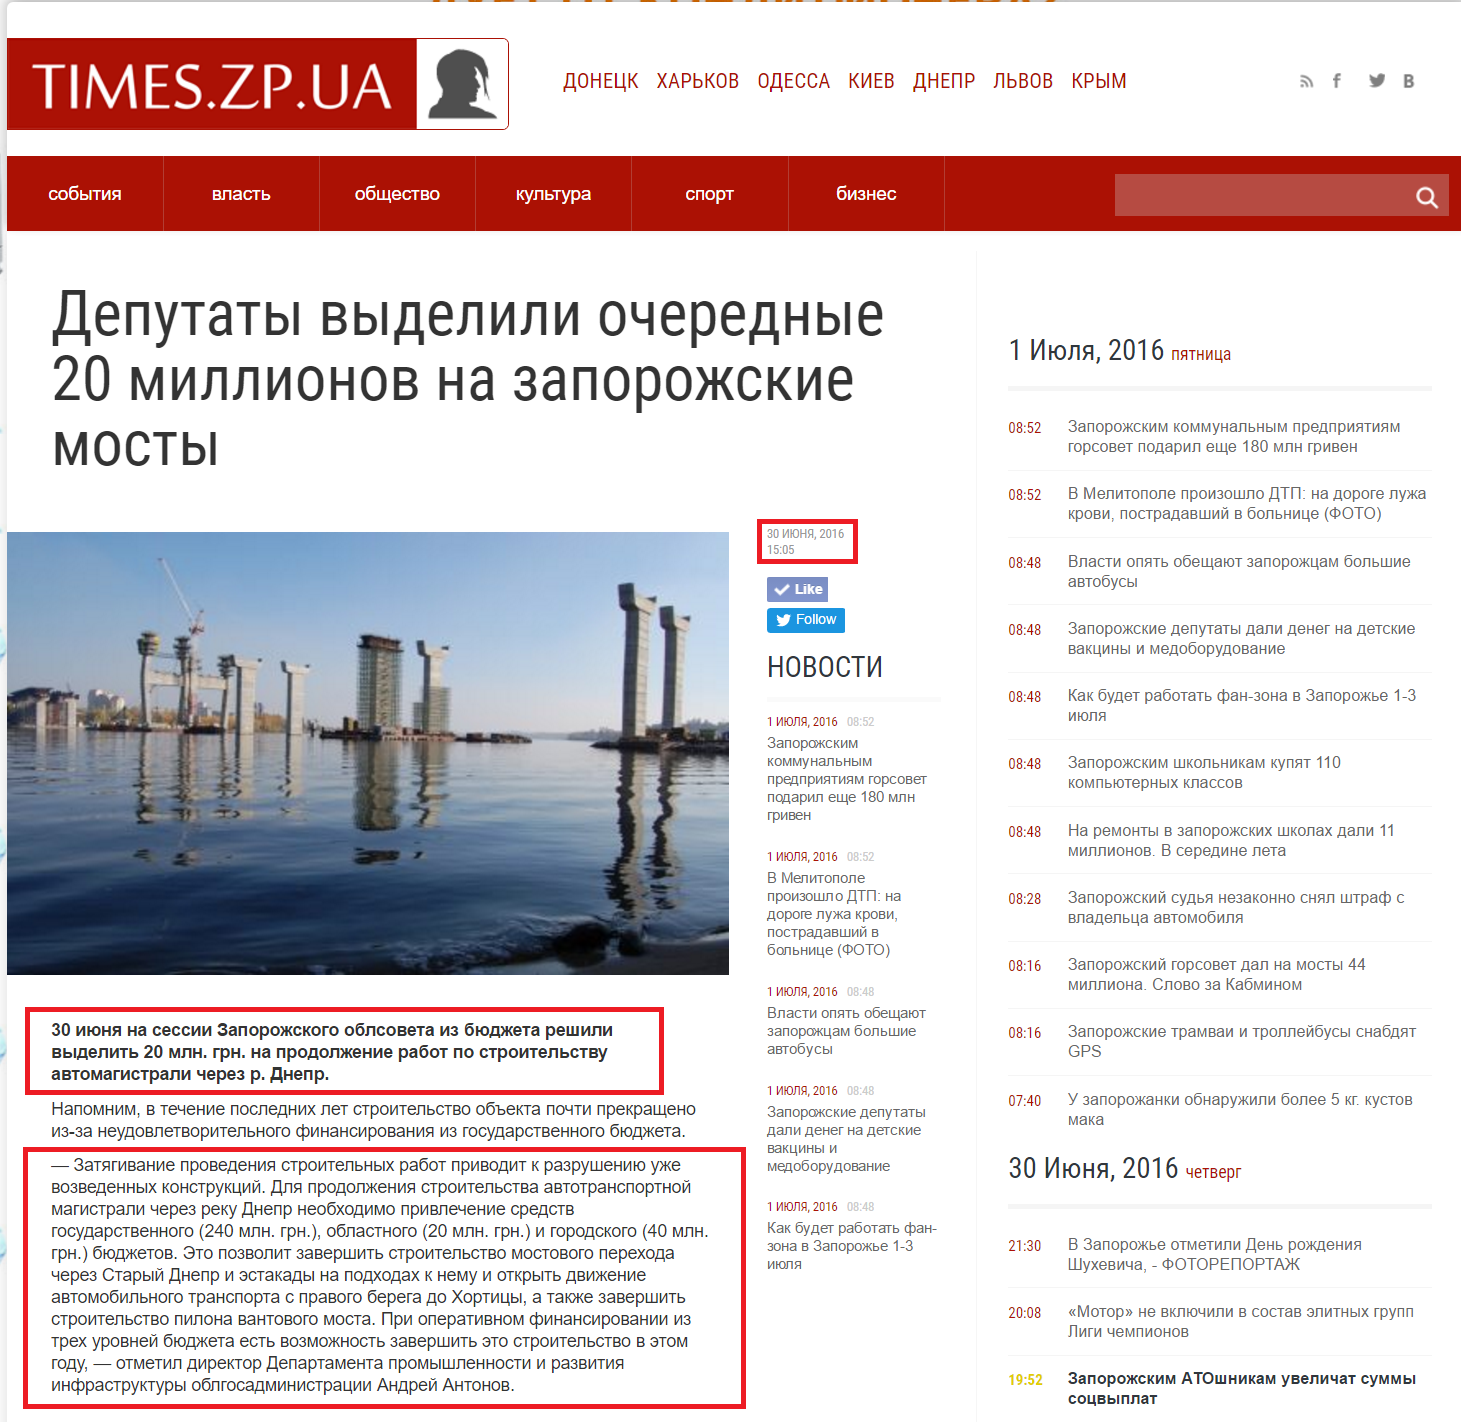 http://times.zp.ua/news/fresh/deputaty_vydelili_ocherednye_20_millionov_na_zaporozhskie_mosty/183581/